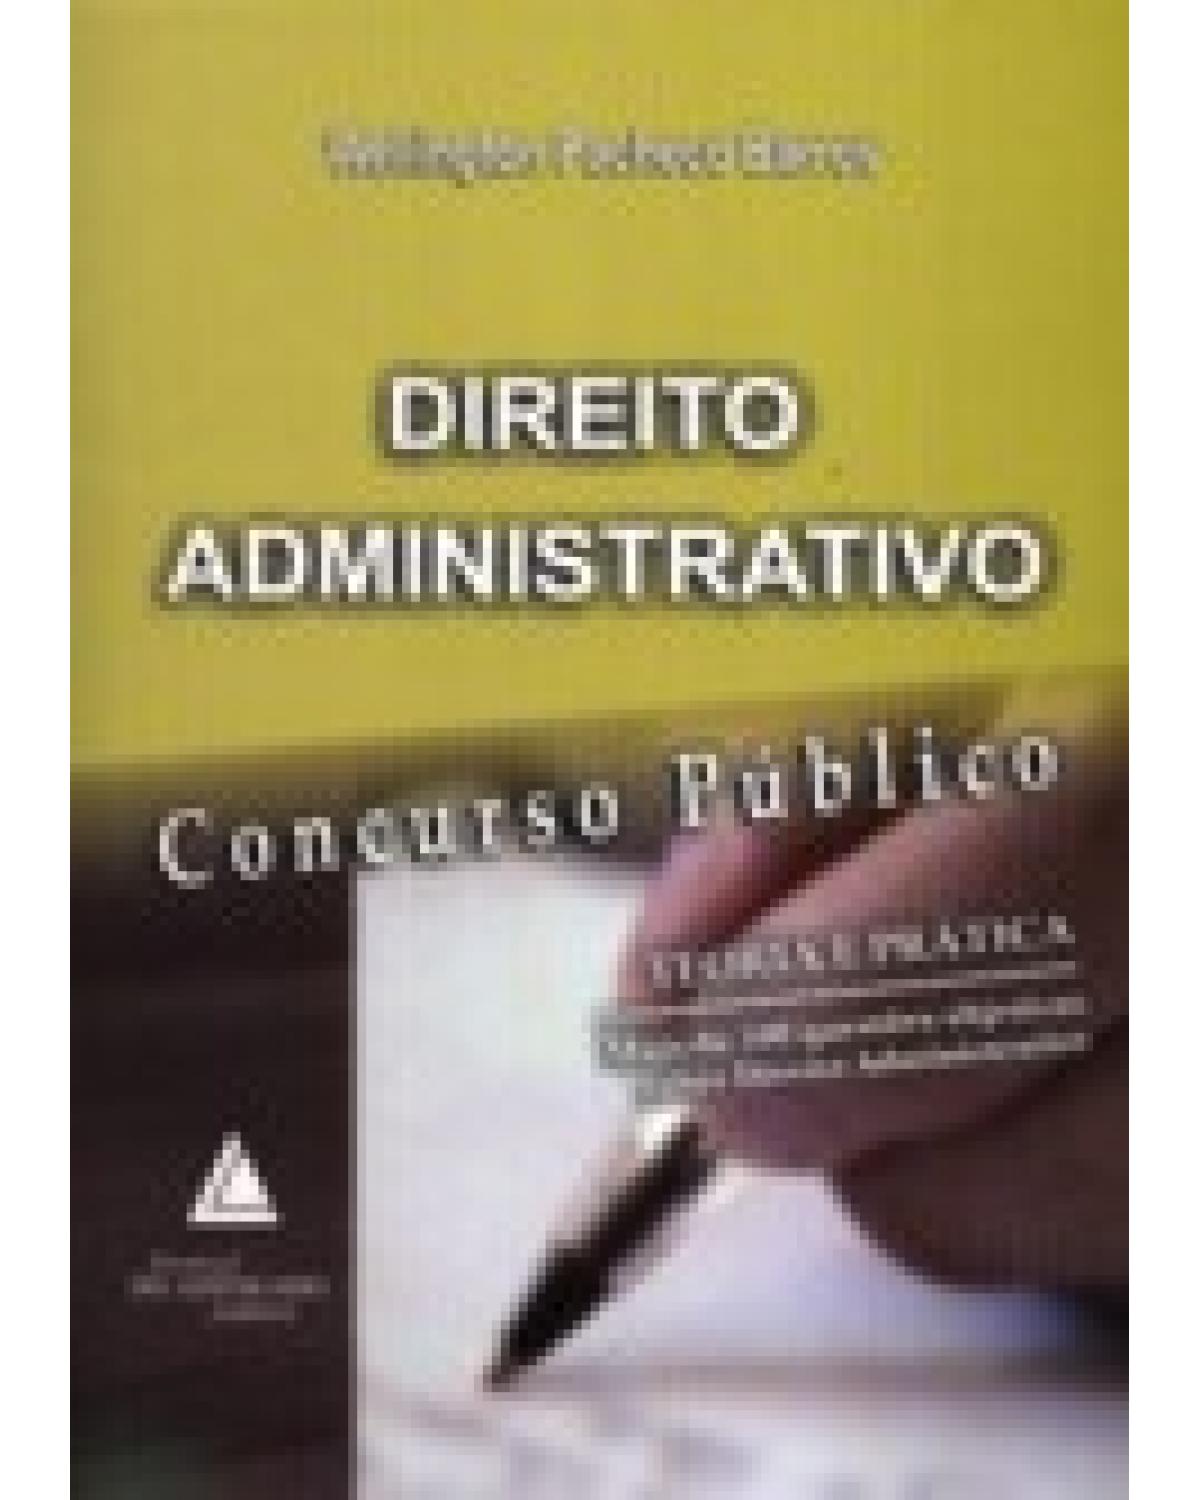 Direito administrativo: Concurso Público - Teoria e prática: mais de 500 questões objetivas sobre direito administrativo - 1ª Edição